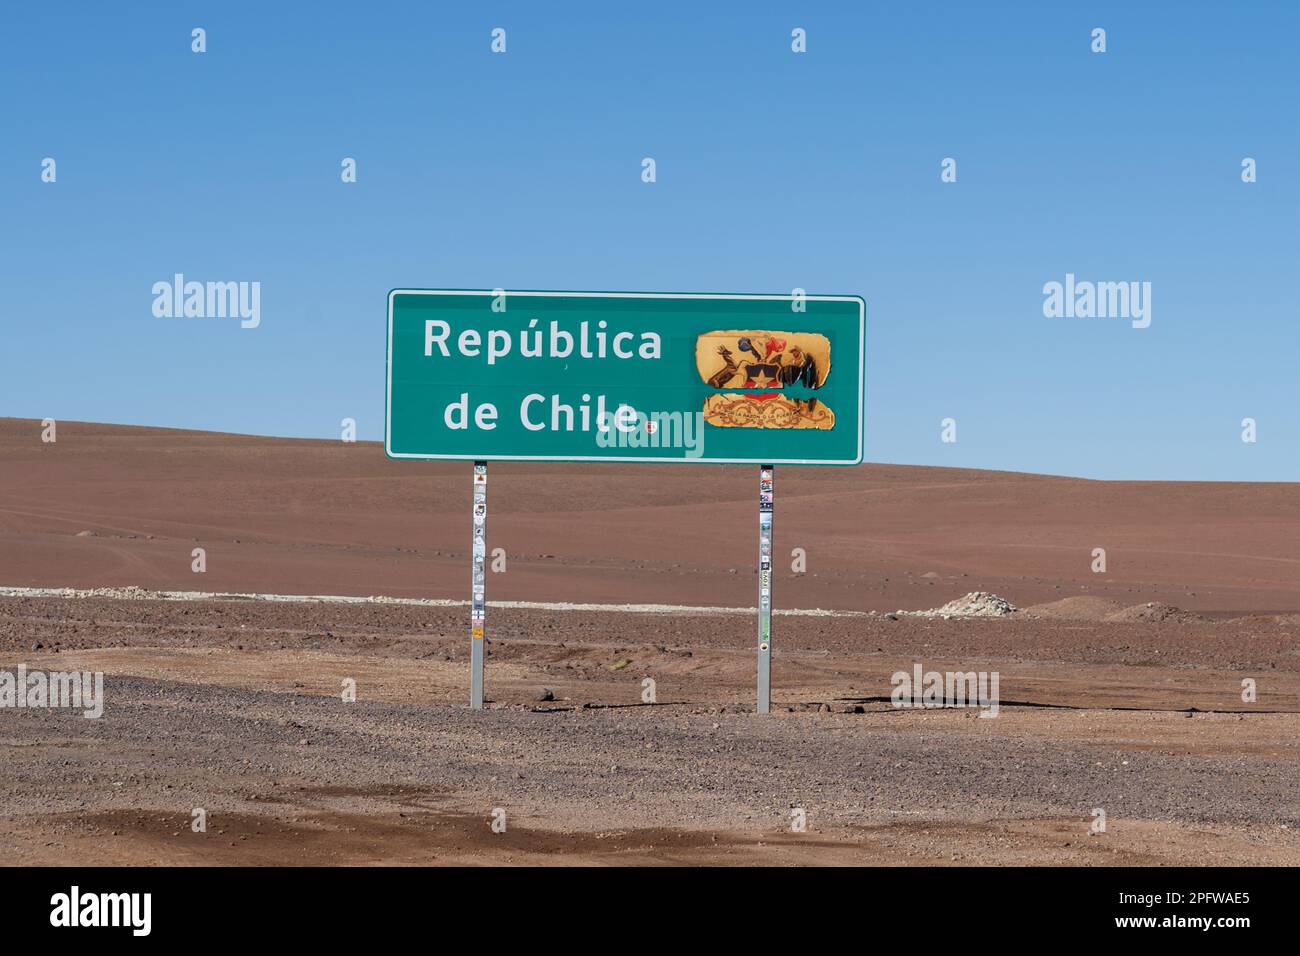 Laguna verde, Chile - 22. Februar 2023: Grenzschild Republik Chile (Republica de Chile) an der Grenze zwischen Bolivien und Chile nahe Laguna verde Stockfoto